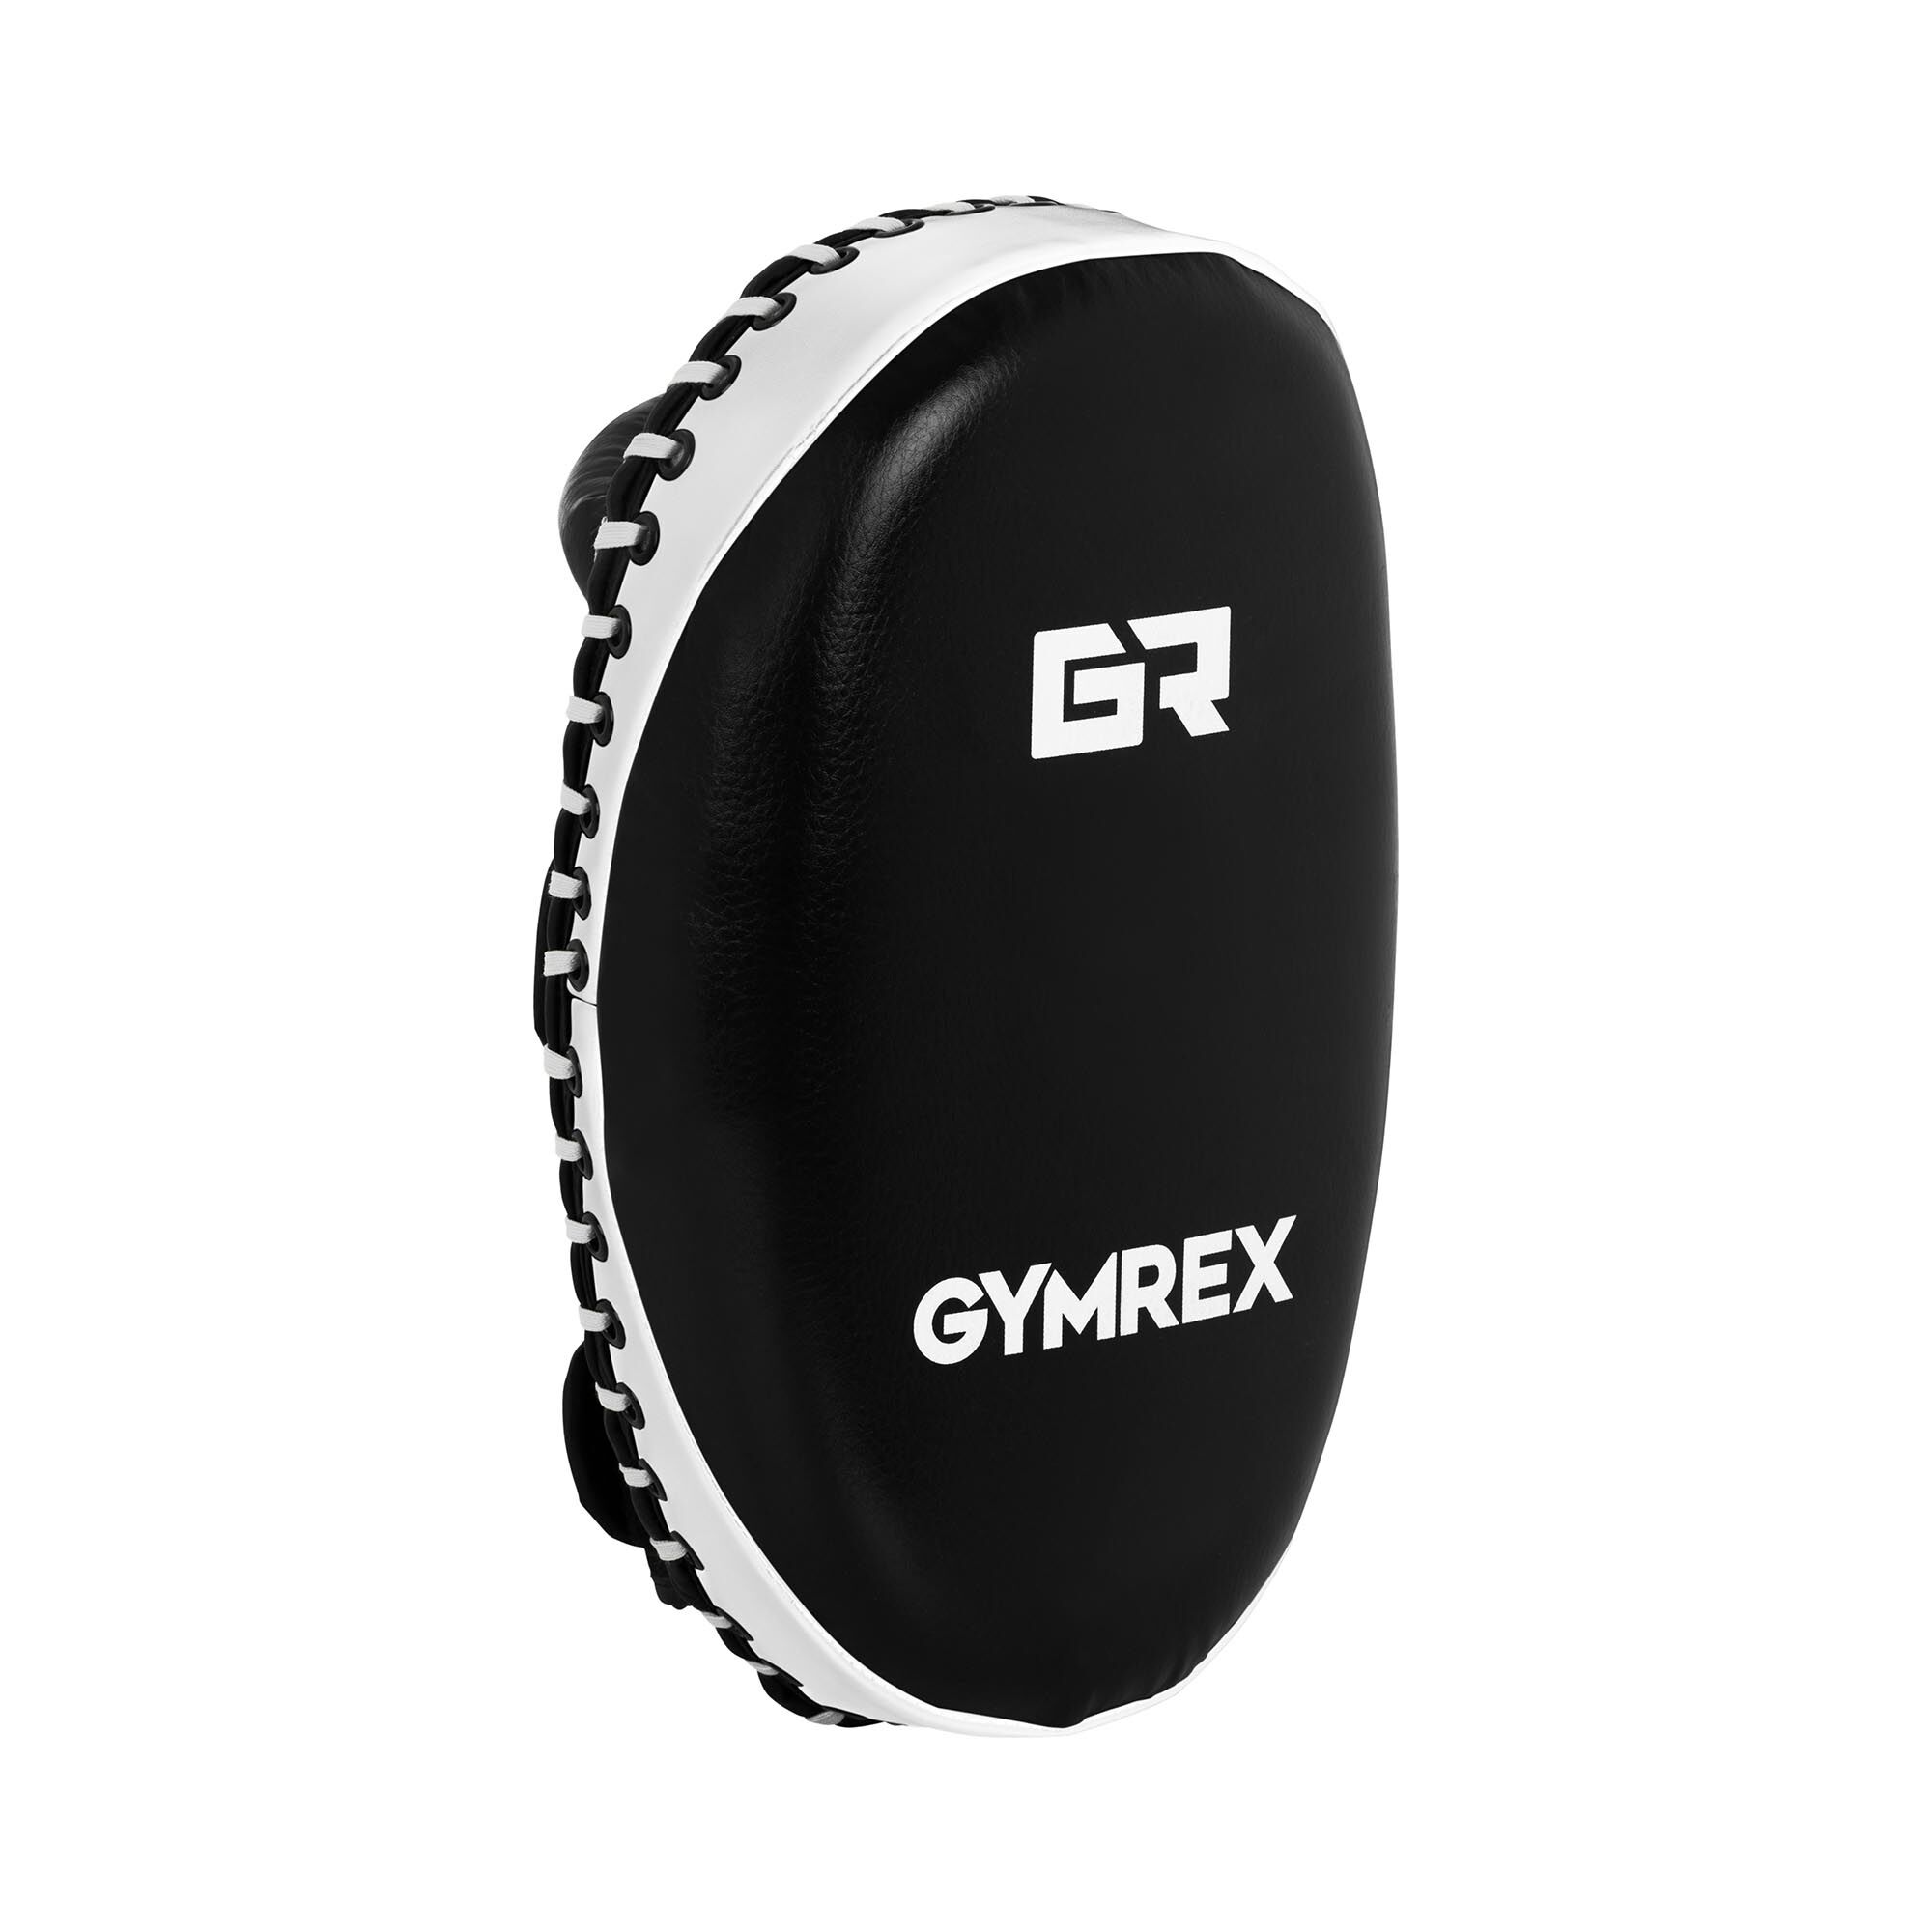 Gymrex Schlagpolster - 350 x 210 mm - schwarz-weiß - weiße Naht